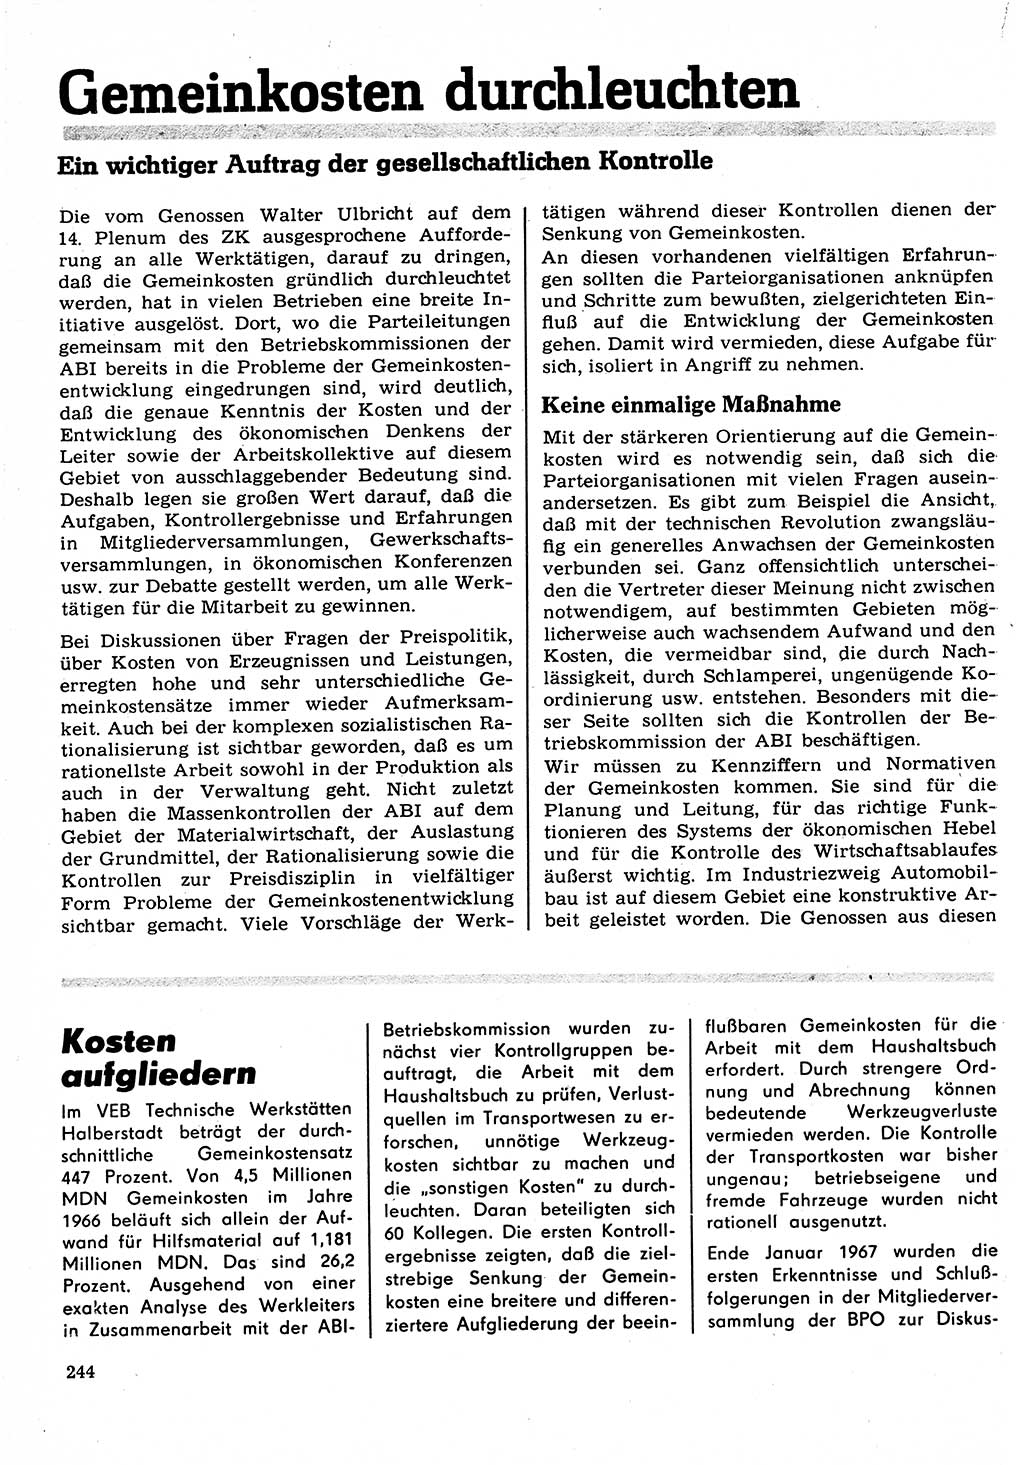 Neuer Weg (NW), Organ des Zentralkomitees (ZK) der SED (Sozialistische Einheitspartei Deutschlands) für Fragen des Parteilebens, 22. Jahrgang [Deutsche Demokratische Republik (DDR)] 1967, Seite 244 (NW ZK SED DDR 1967, S. 244)